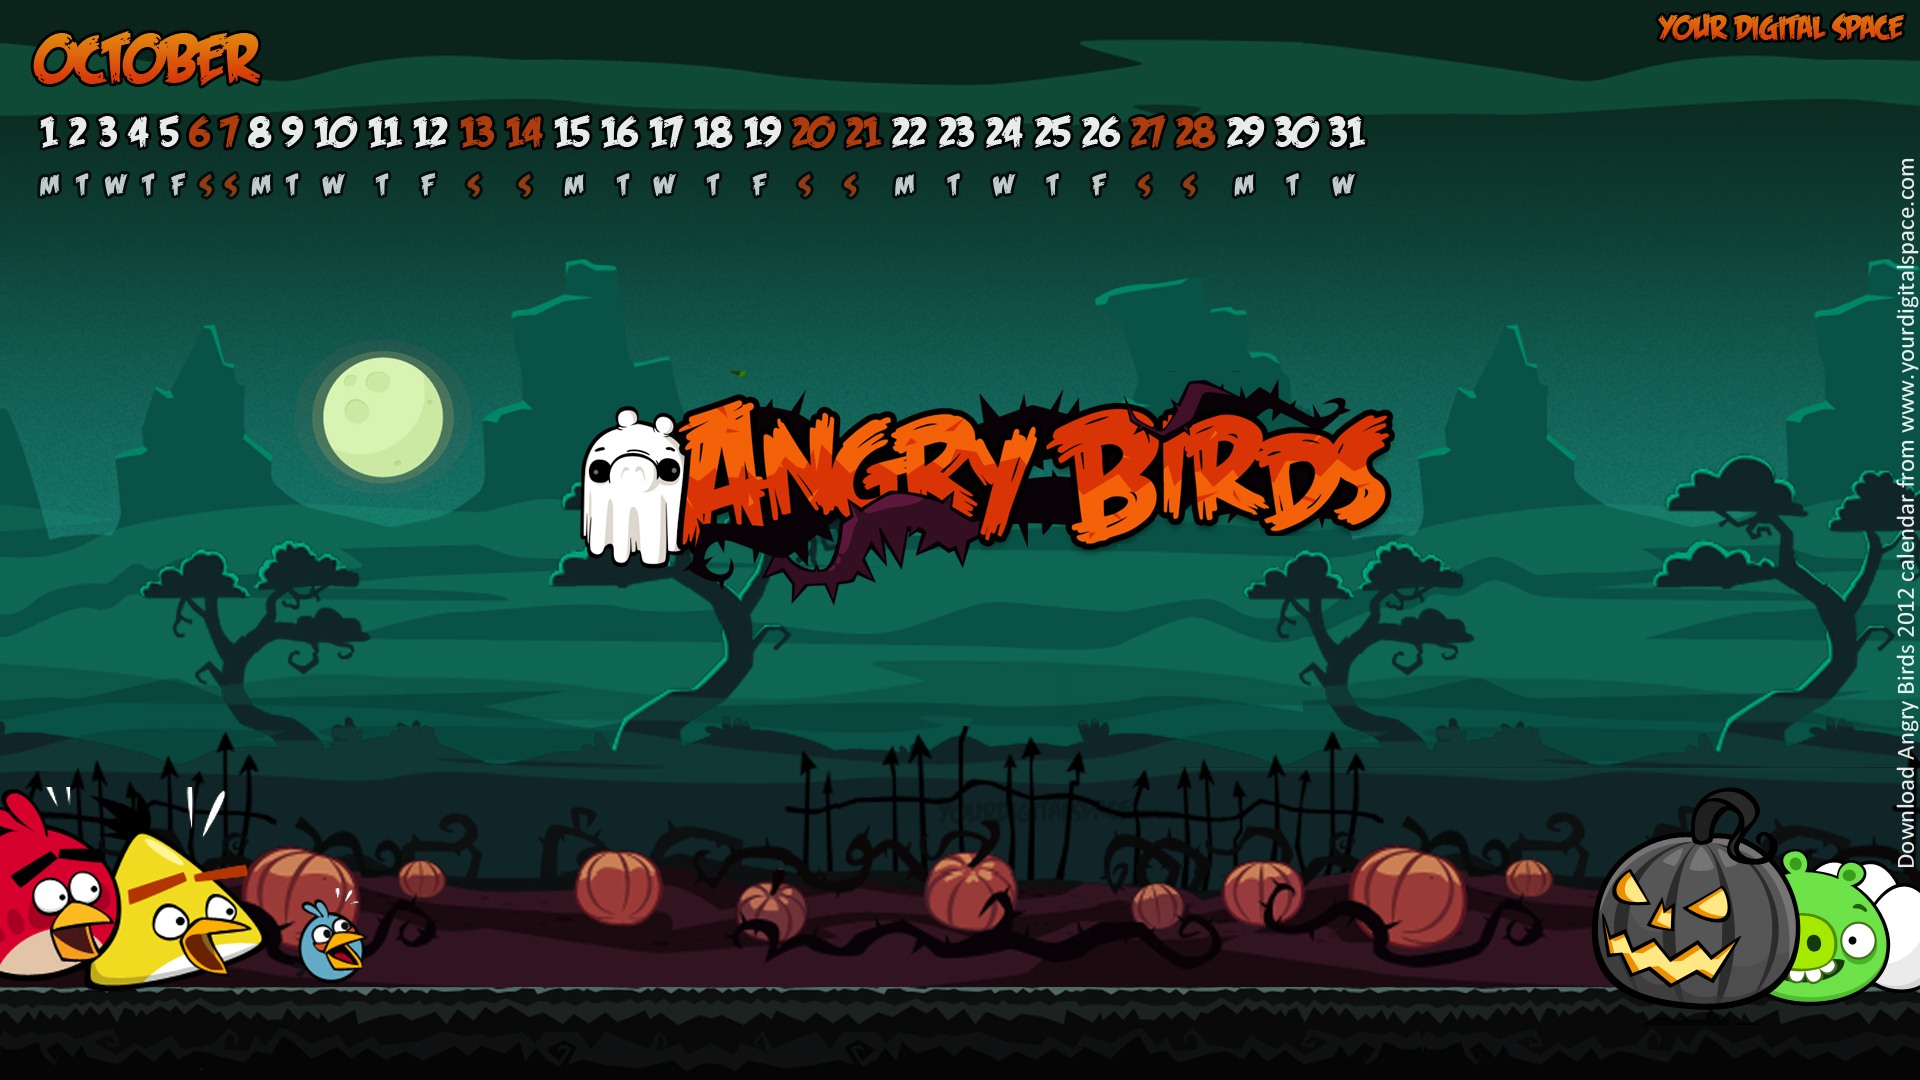 Angry Birds 2012 calendario fondos de escritorio #11 - 1920x1080